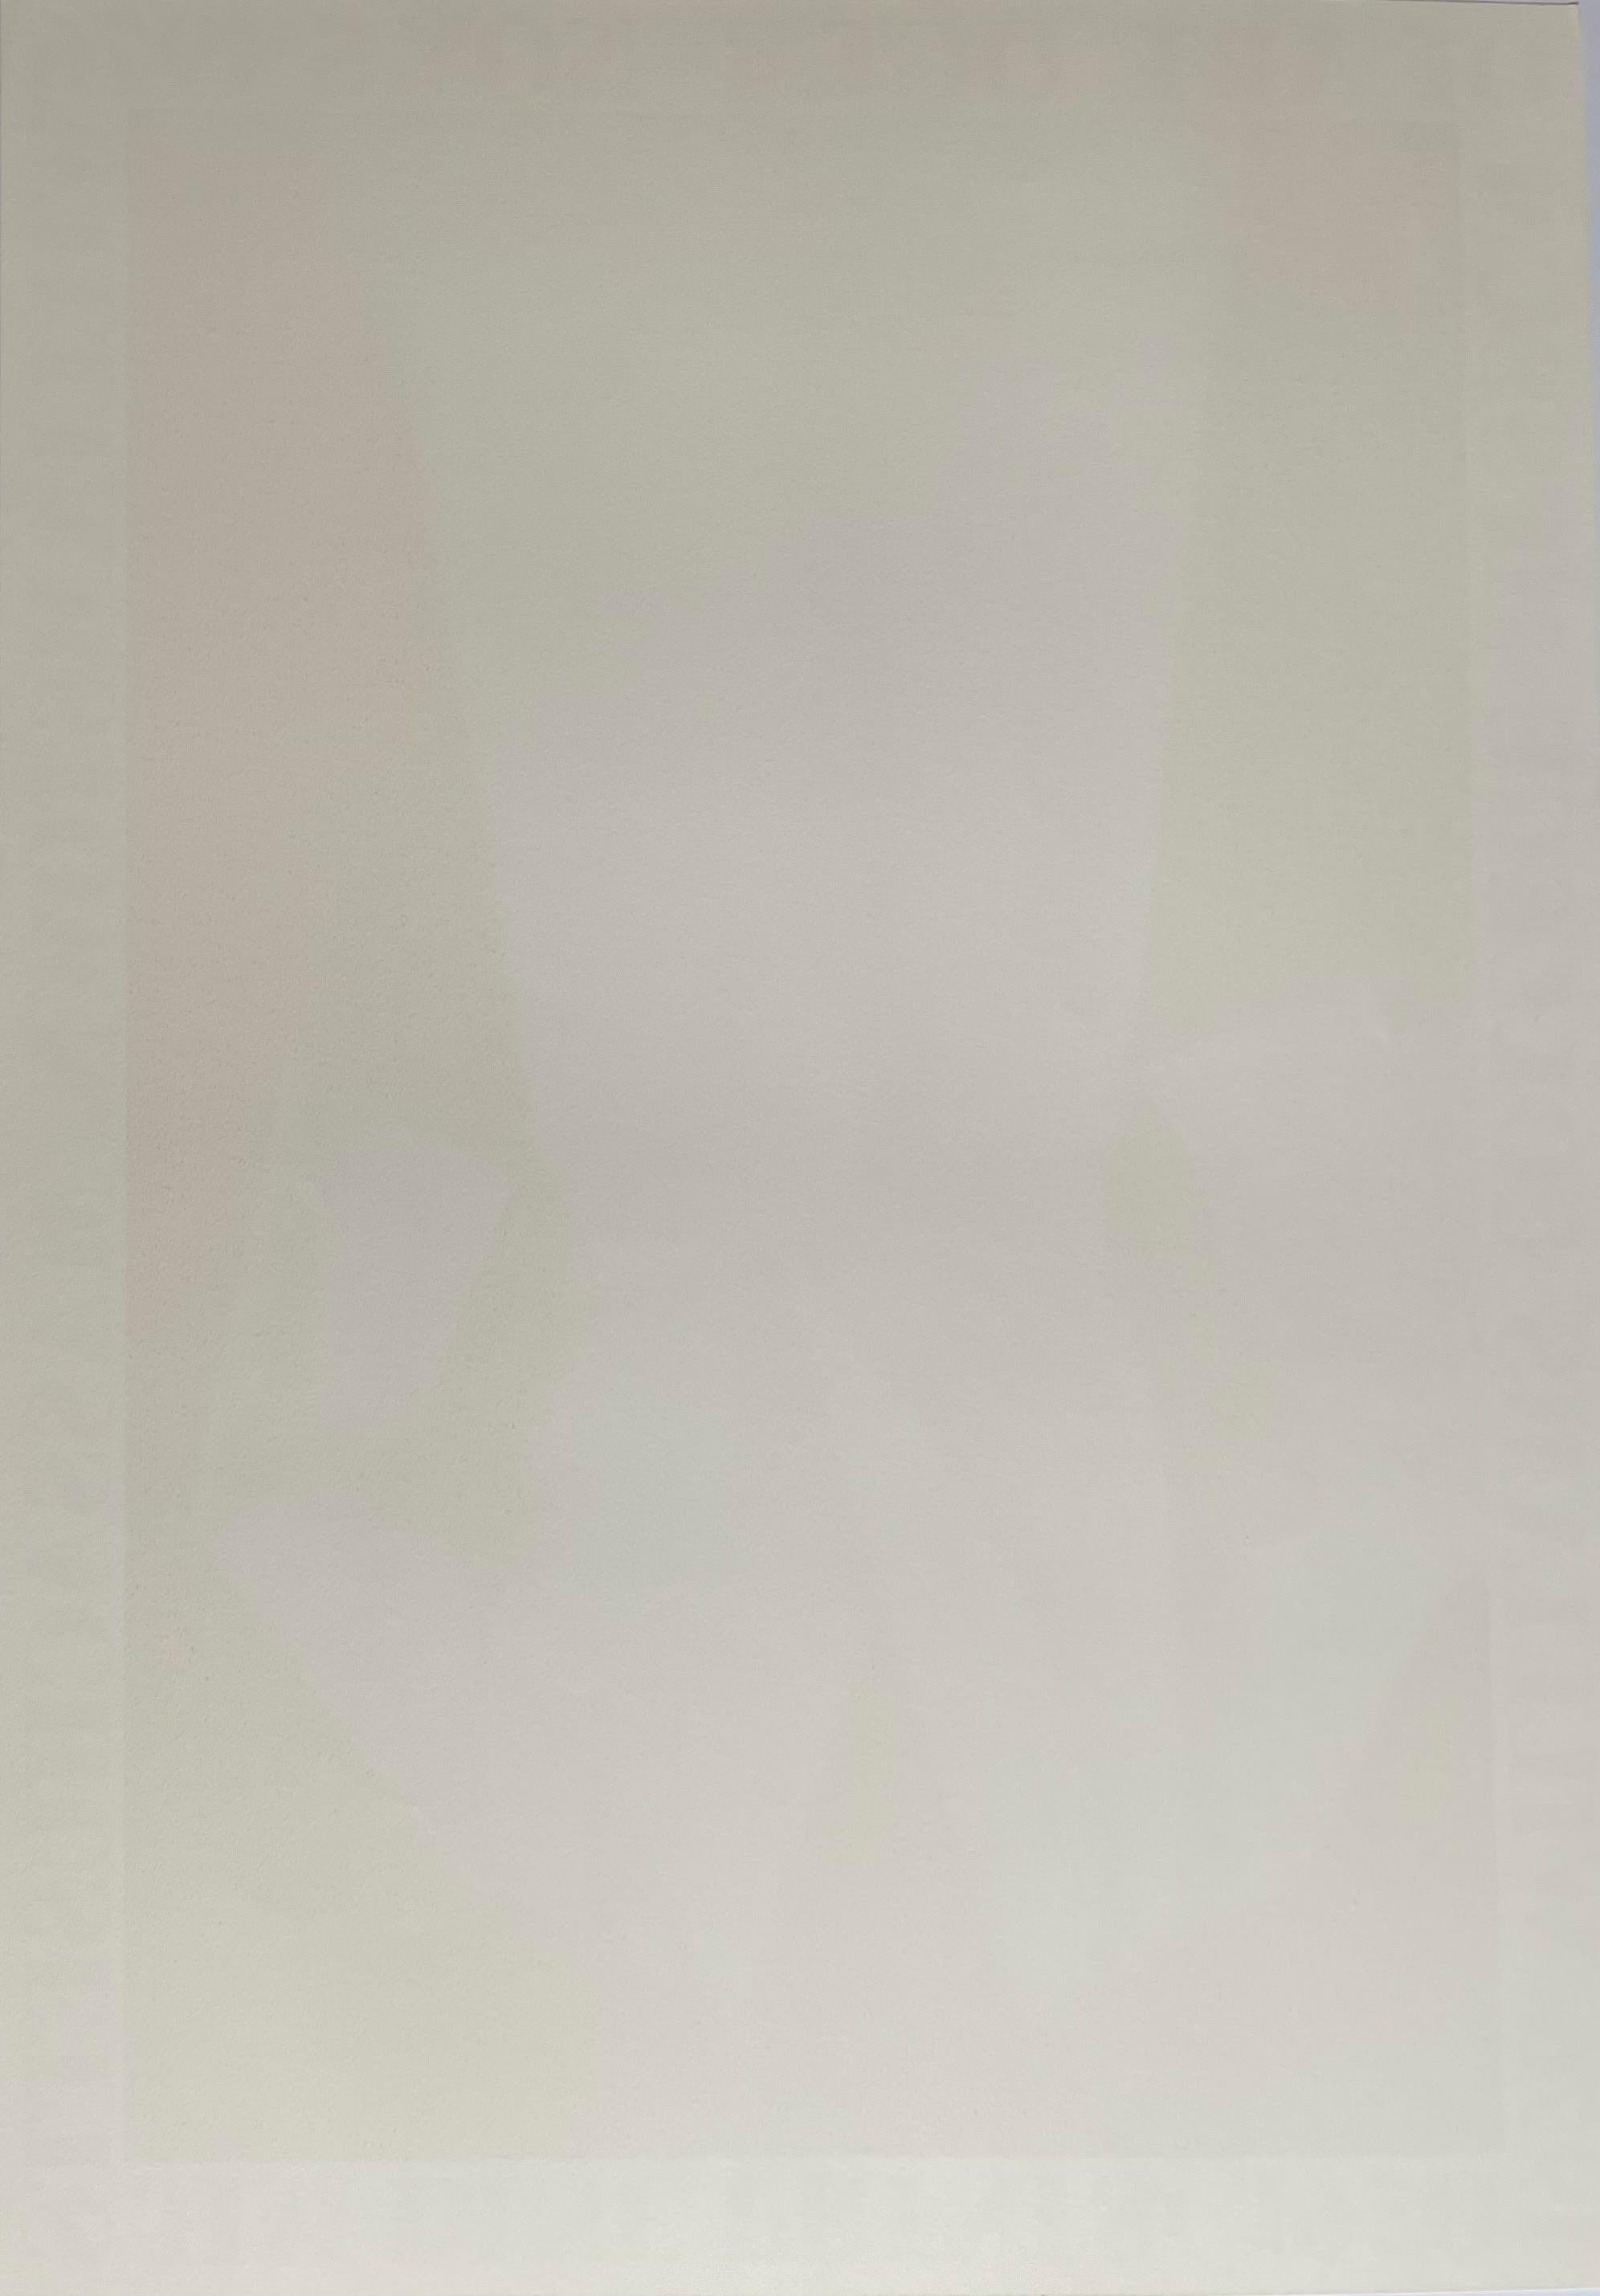 Jim Dine
Limitierte Auflage Williams College Museum Poster, 1976
Offsetlithografie-Plakat auf cremefarbenem Velinpapier
Limitierte Auflage von 300 Stück 
Veröffentlicht von Pace Editions, mit Copyright
LARGE: 37 x 22 Zoll
(dieses Werk wird gerollt